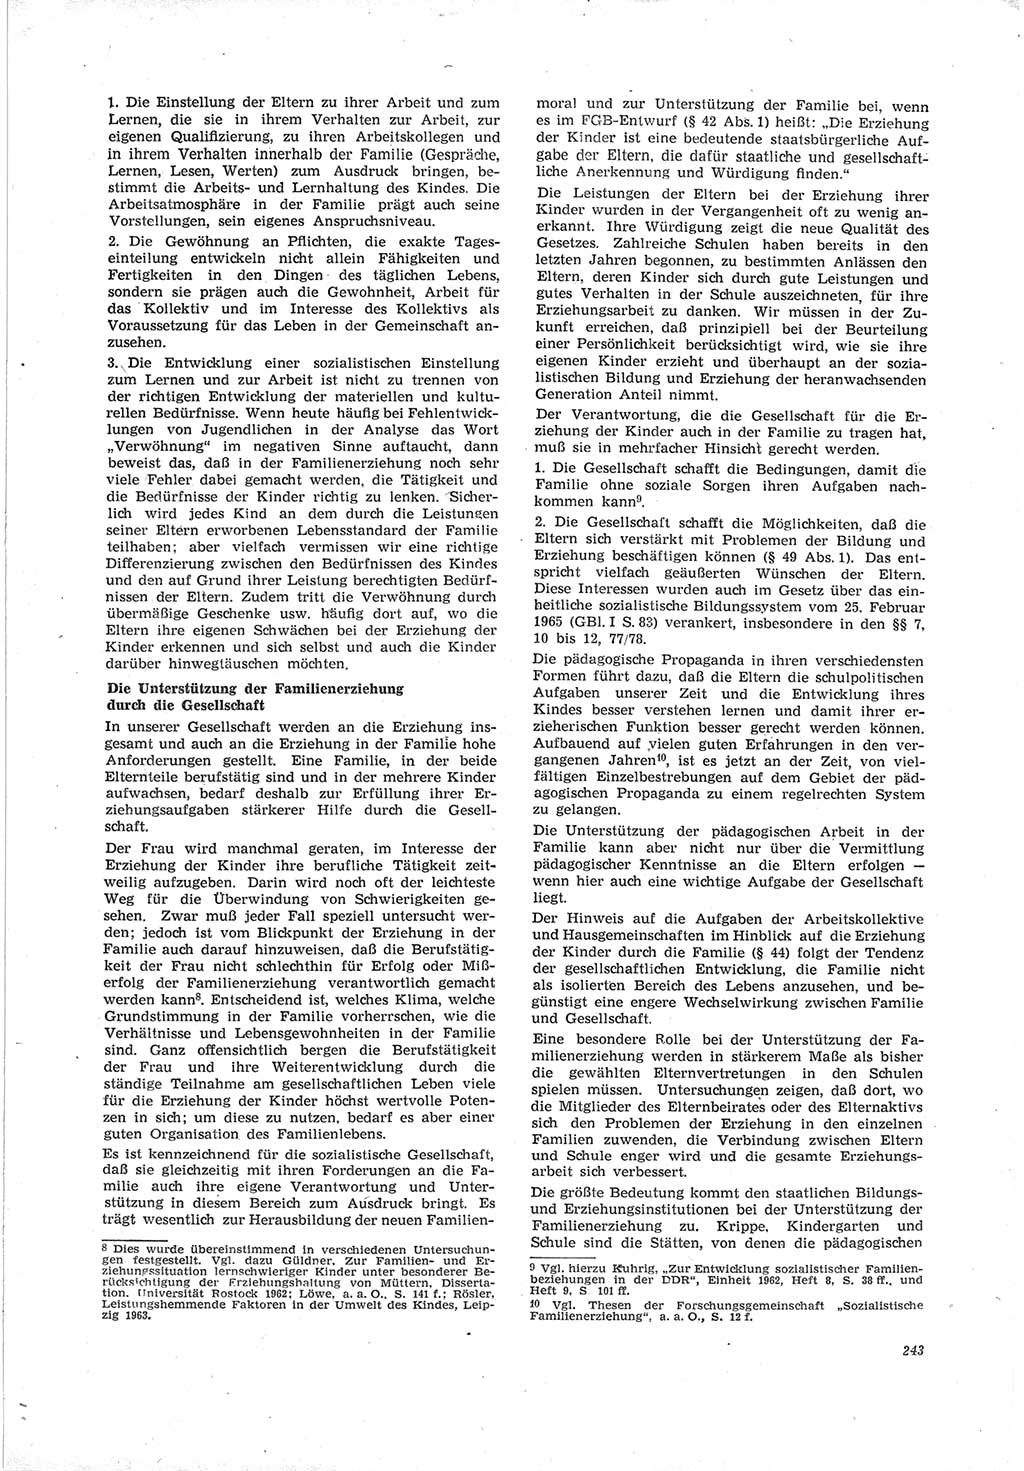 Neue Justiz (NJ), Zeitschrift für Recht und Rechtswissenschaft [Deutsche Demokratische Republik (DDR)], 19. Jahrgang 1965, Seite 243 (NJ DDR 1965, S. 243)